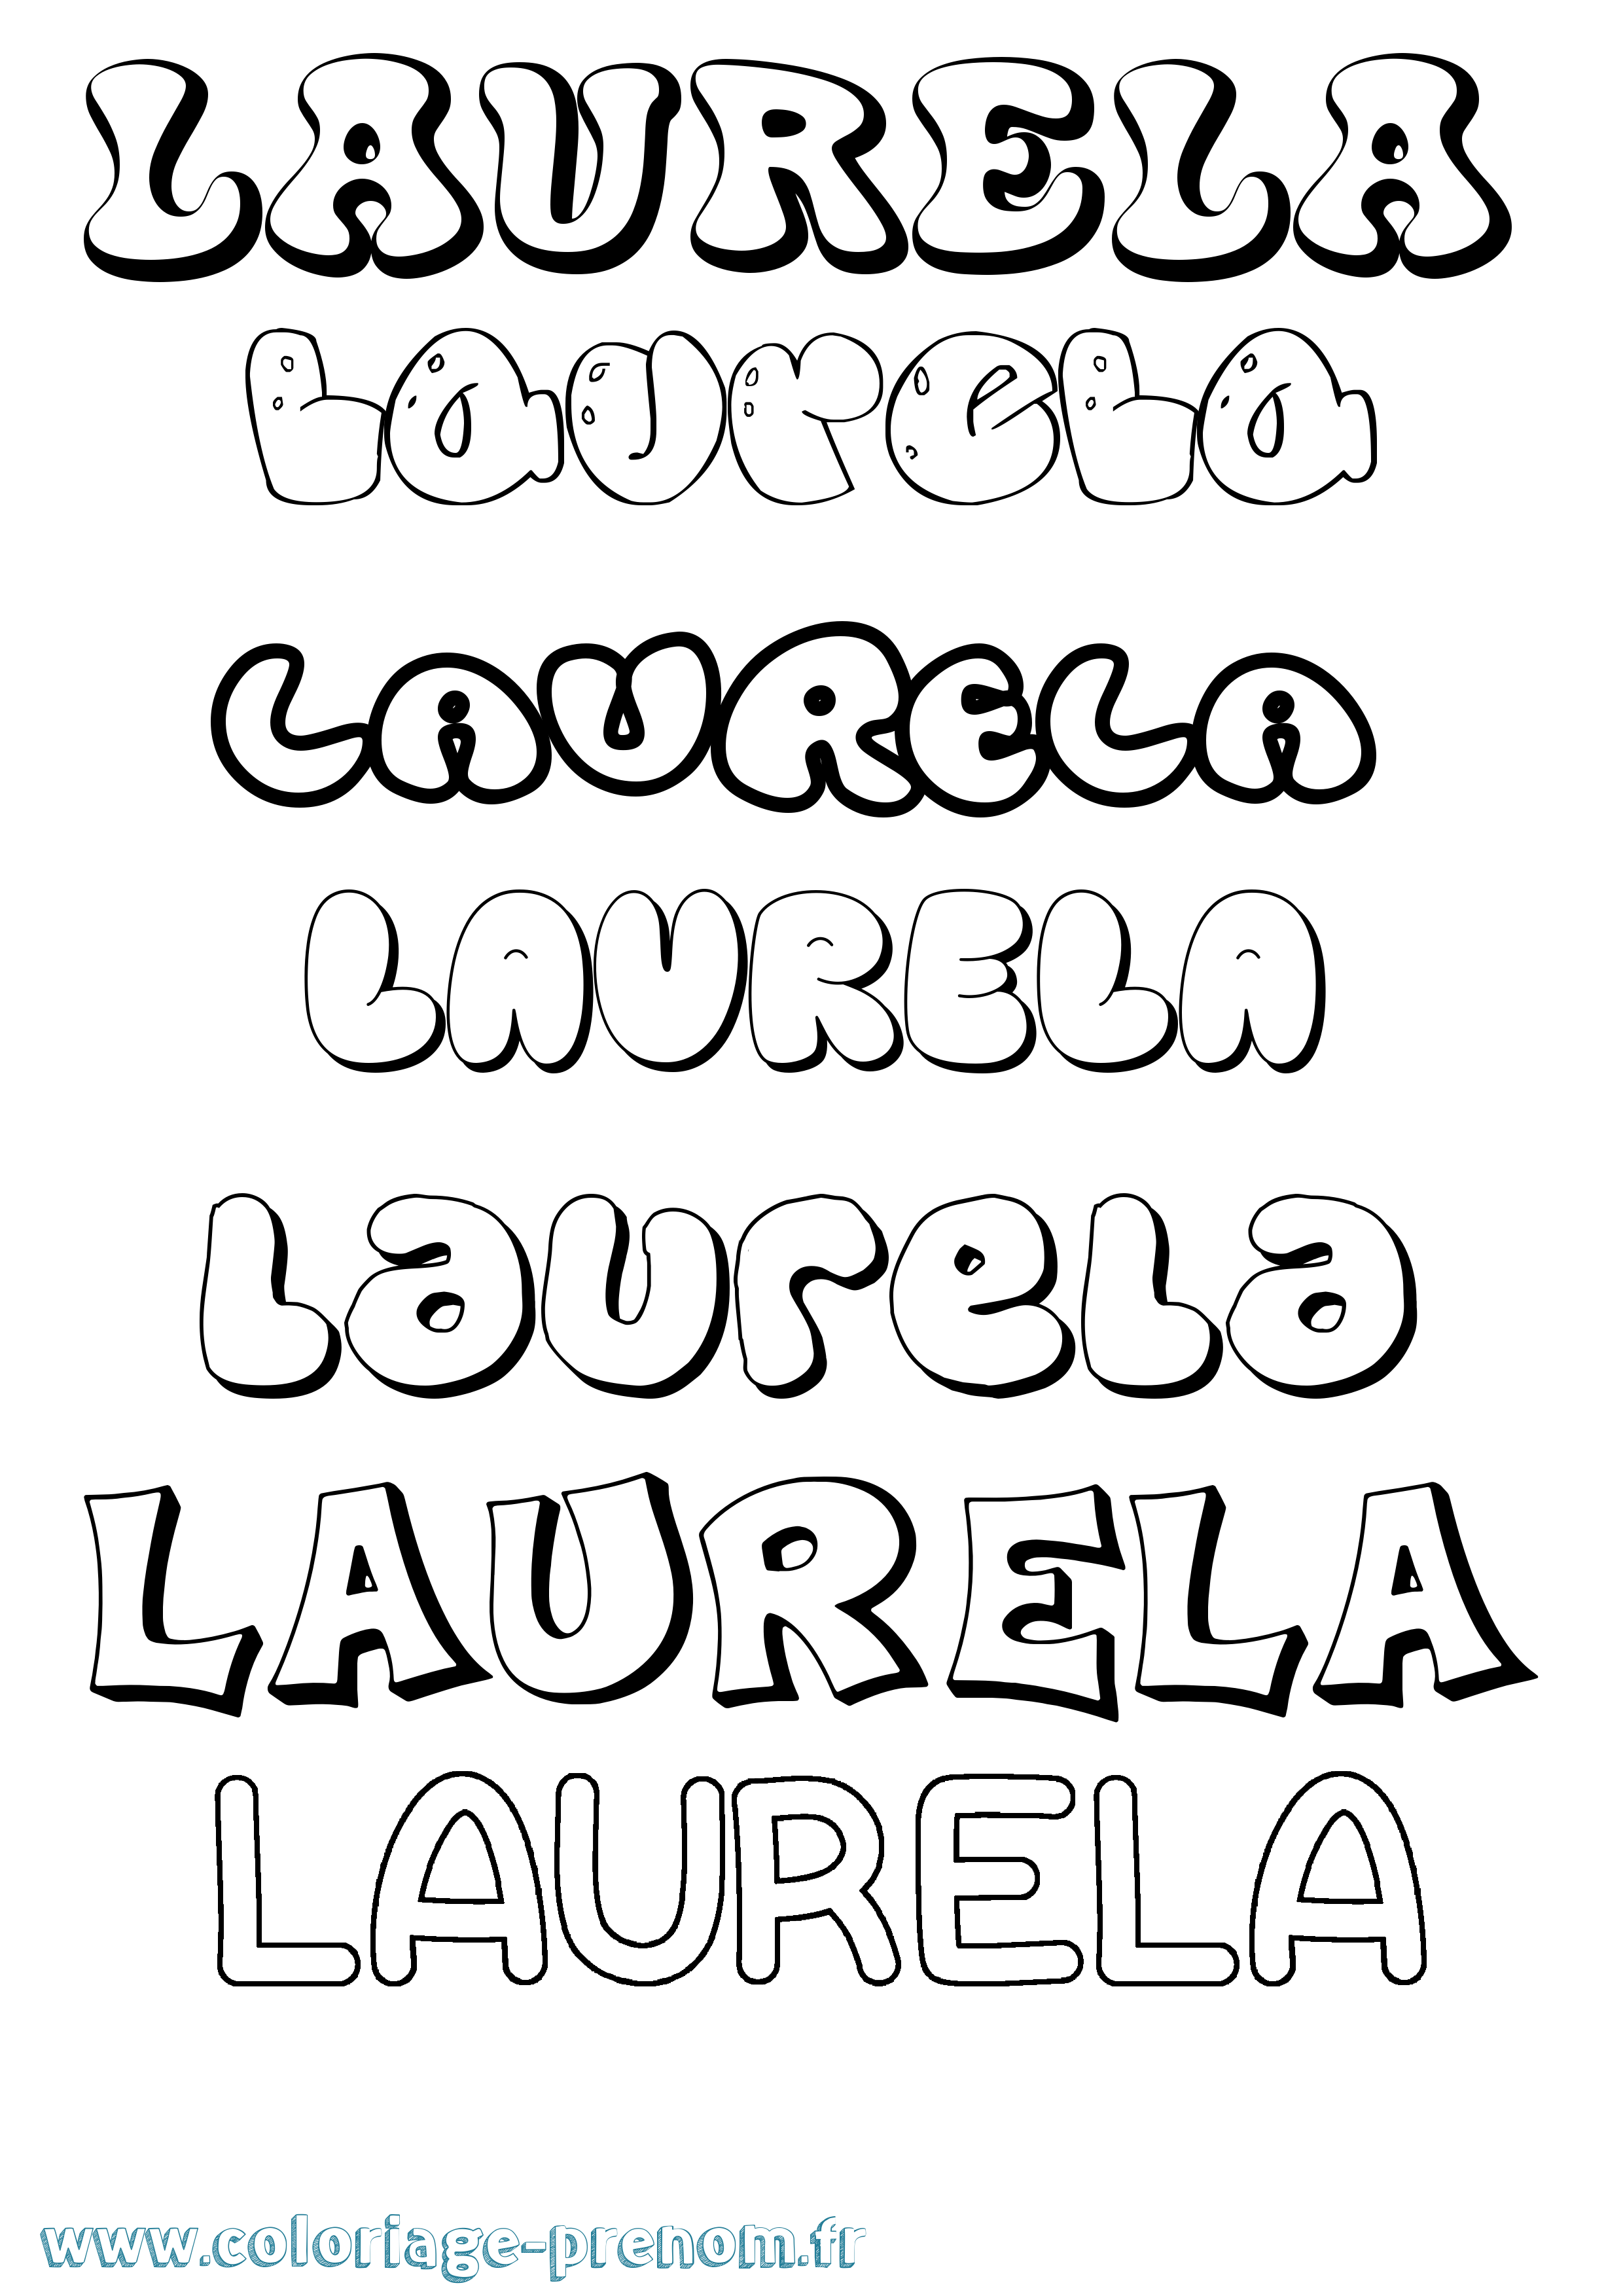 Coloriage prénom Laurela Bubble